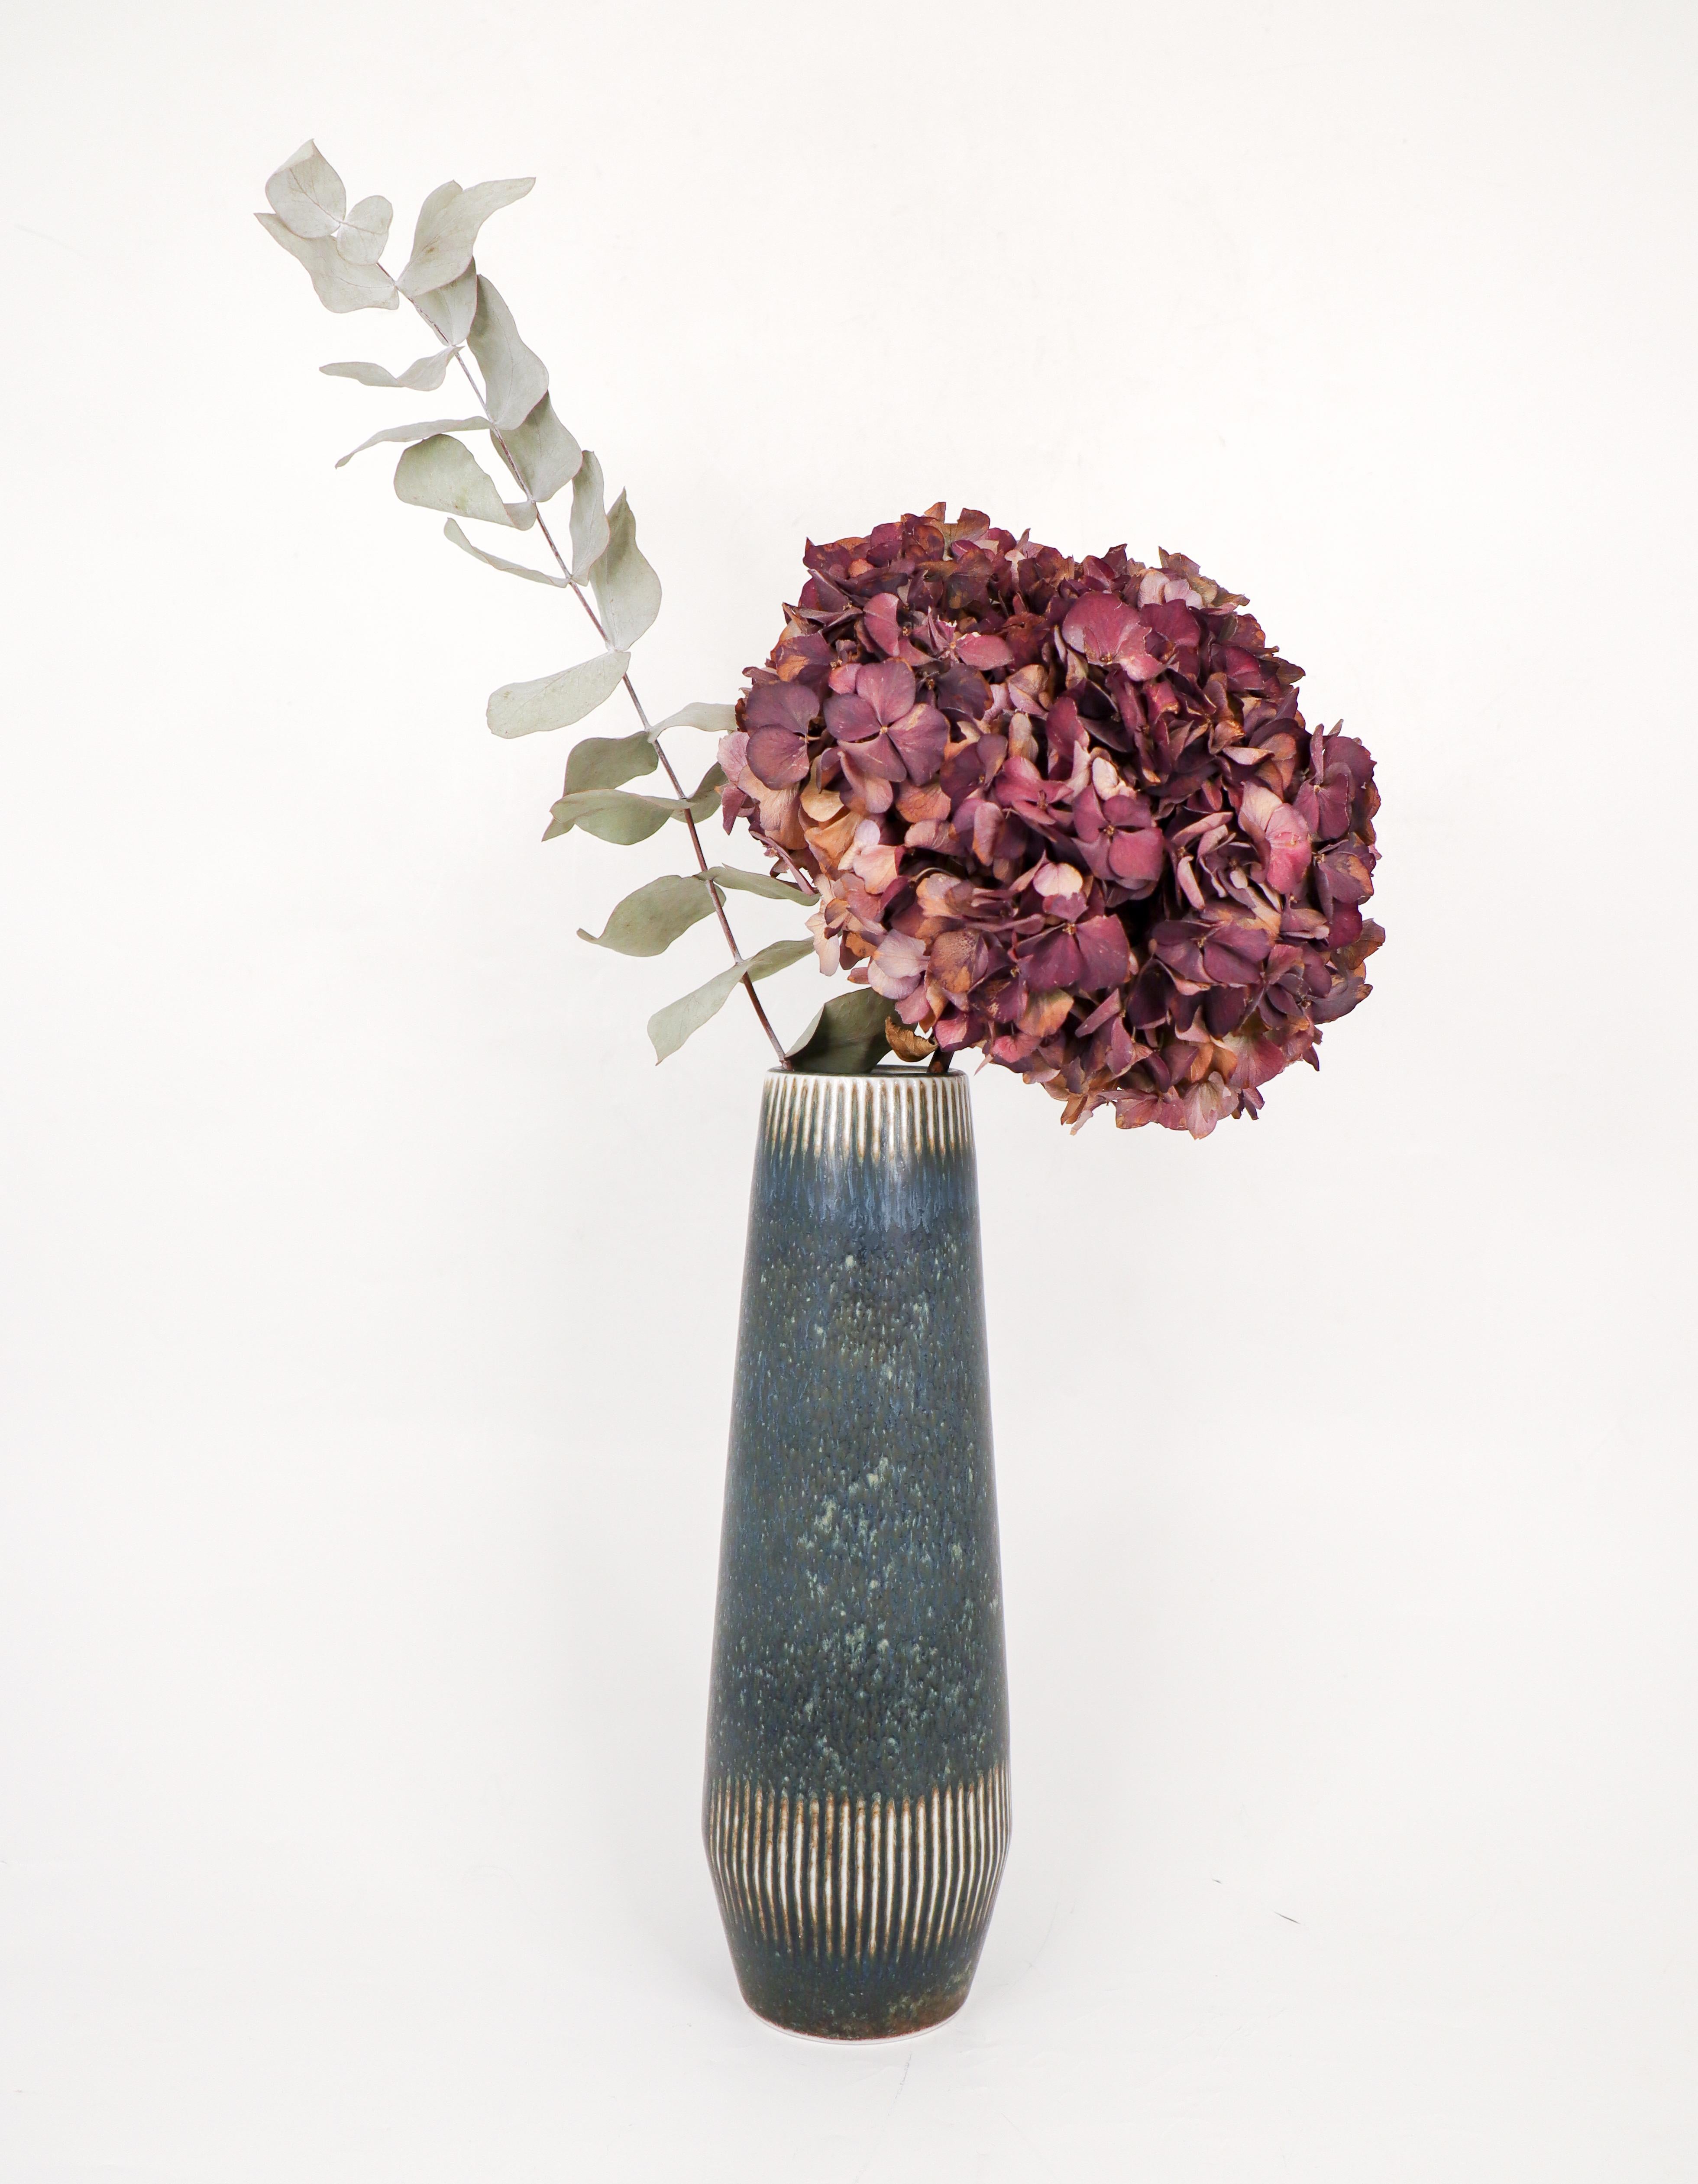 Vase en céramique conçu par Carl-Harry Stålhane à Rörstrand au milieu du XXe siècle. Le vase est d'une belle couleur bleu/gris et mesure 28 cm de haut. Il est marqué comme étant de 1ère qualité et est en excellent état. 

Carl-Harry Stålhane est